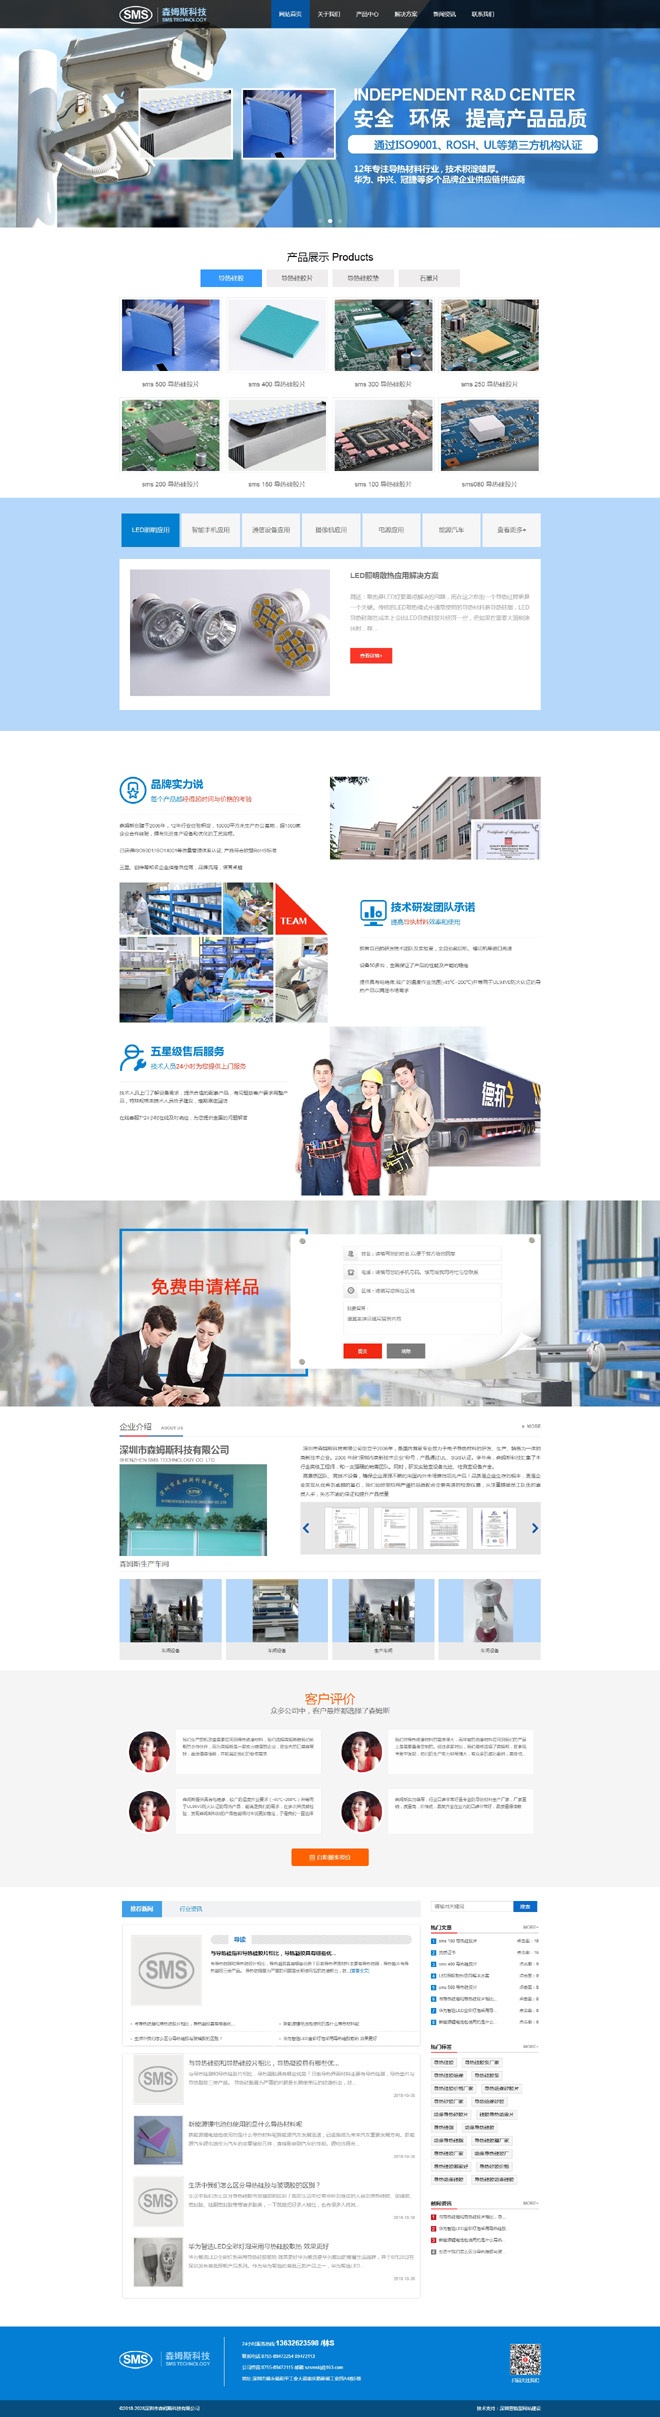 龙华化工企业网站建设,森姆斯导热材料网站建设案例 